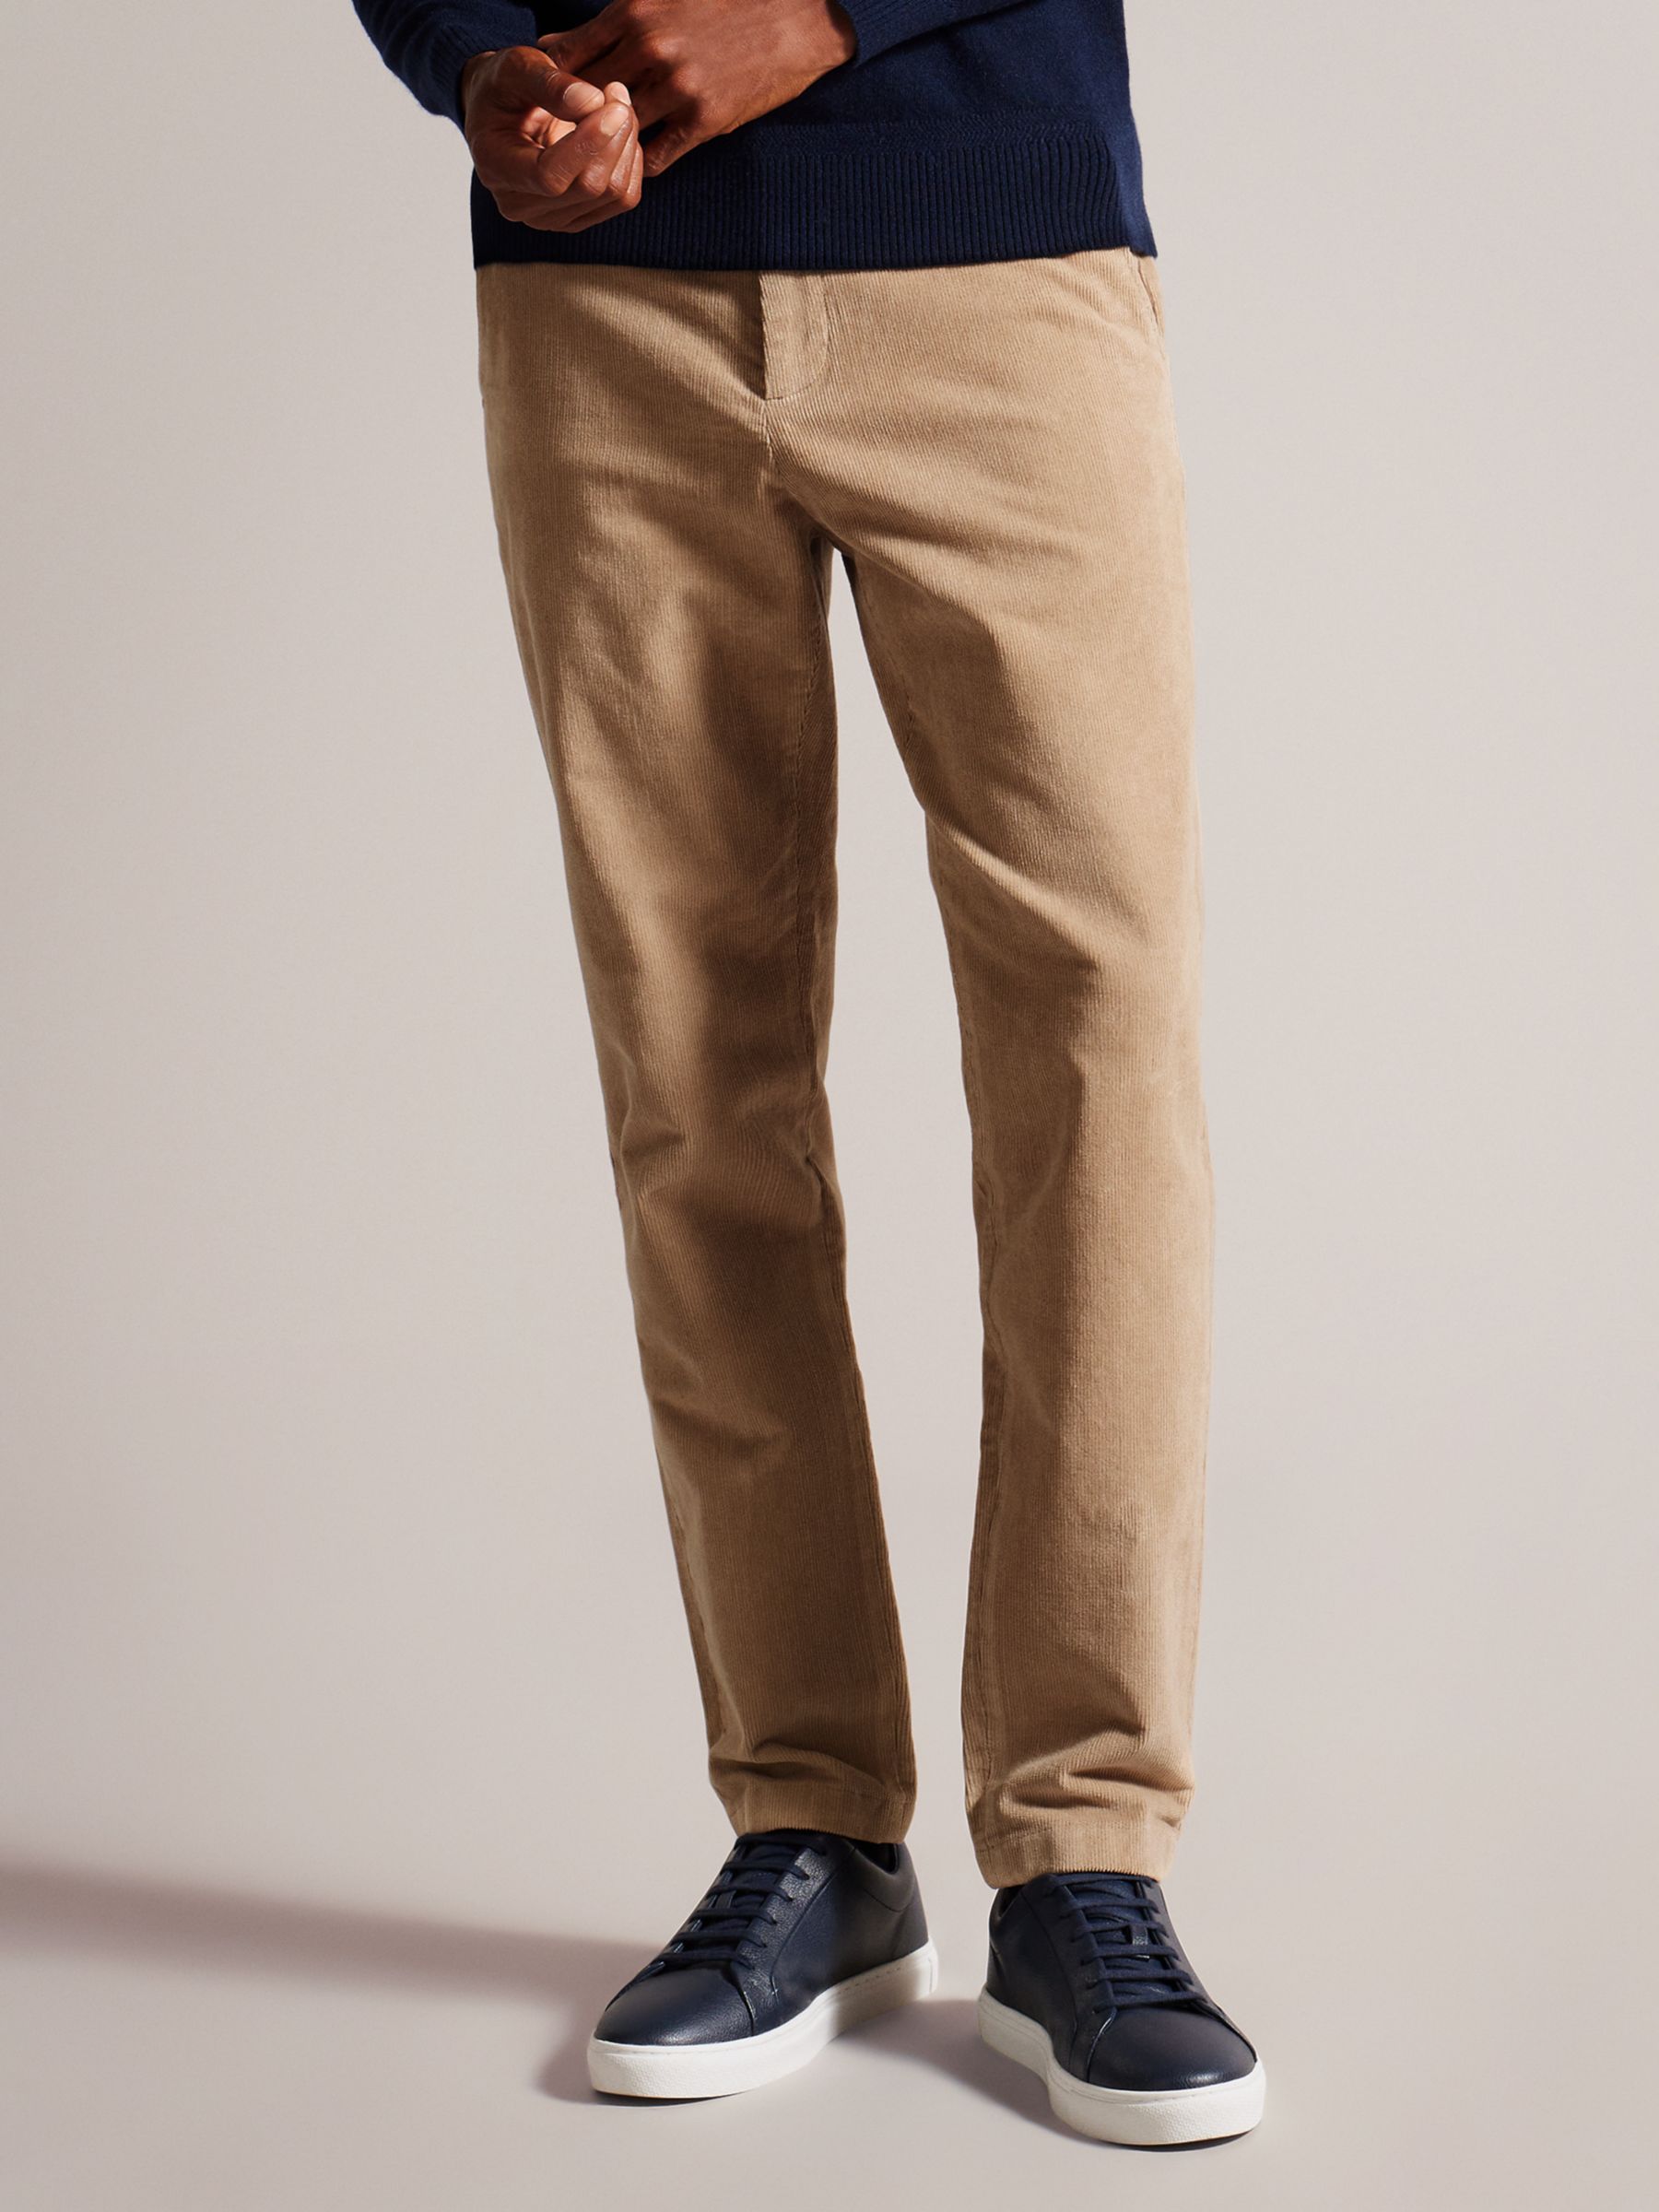 Baker Pants, Mens, Straight Loose, Original Color, American